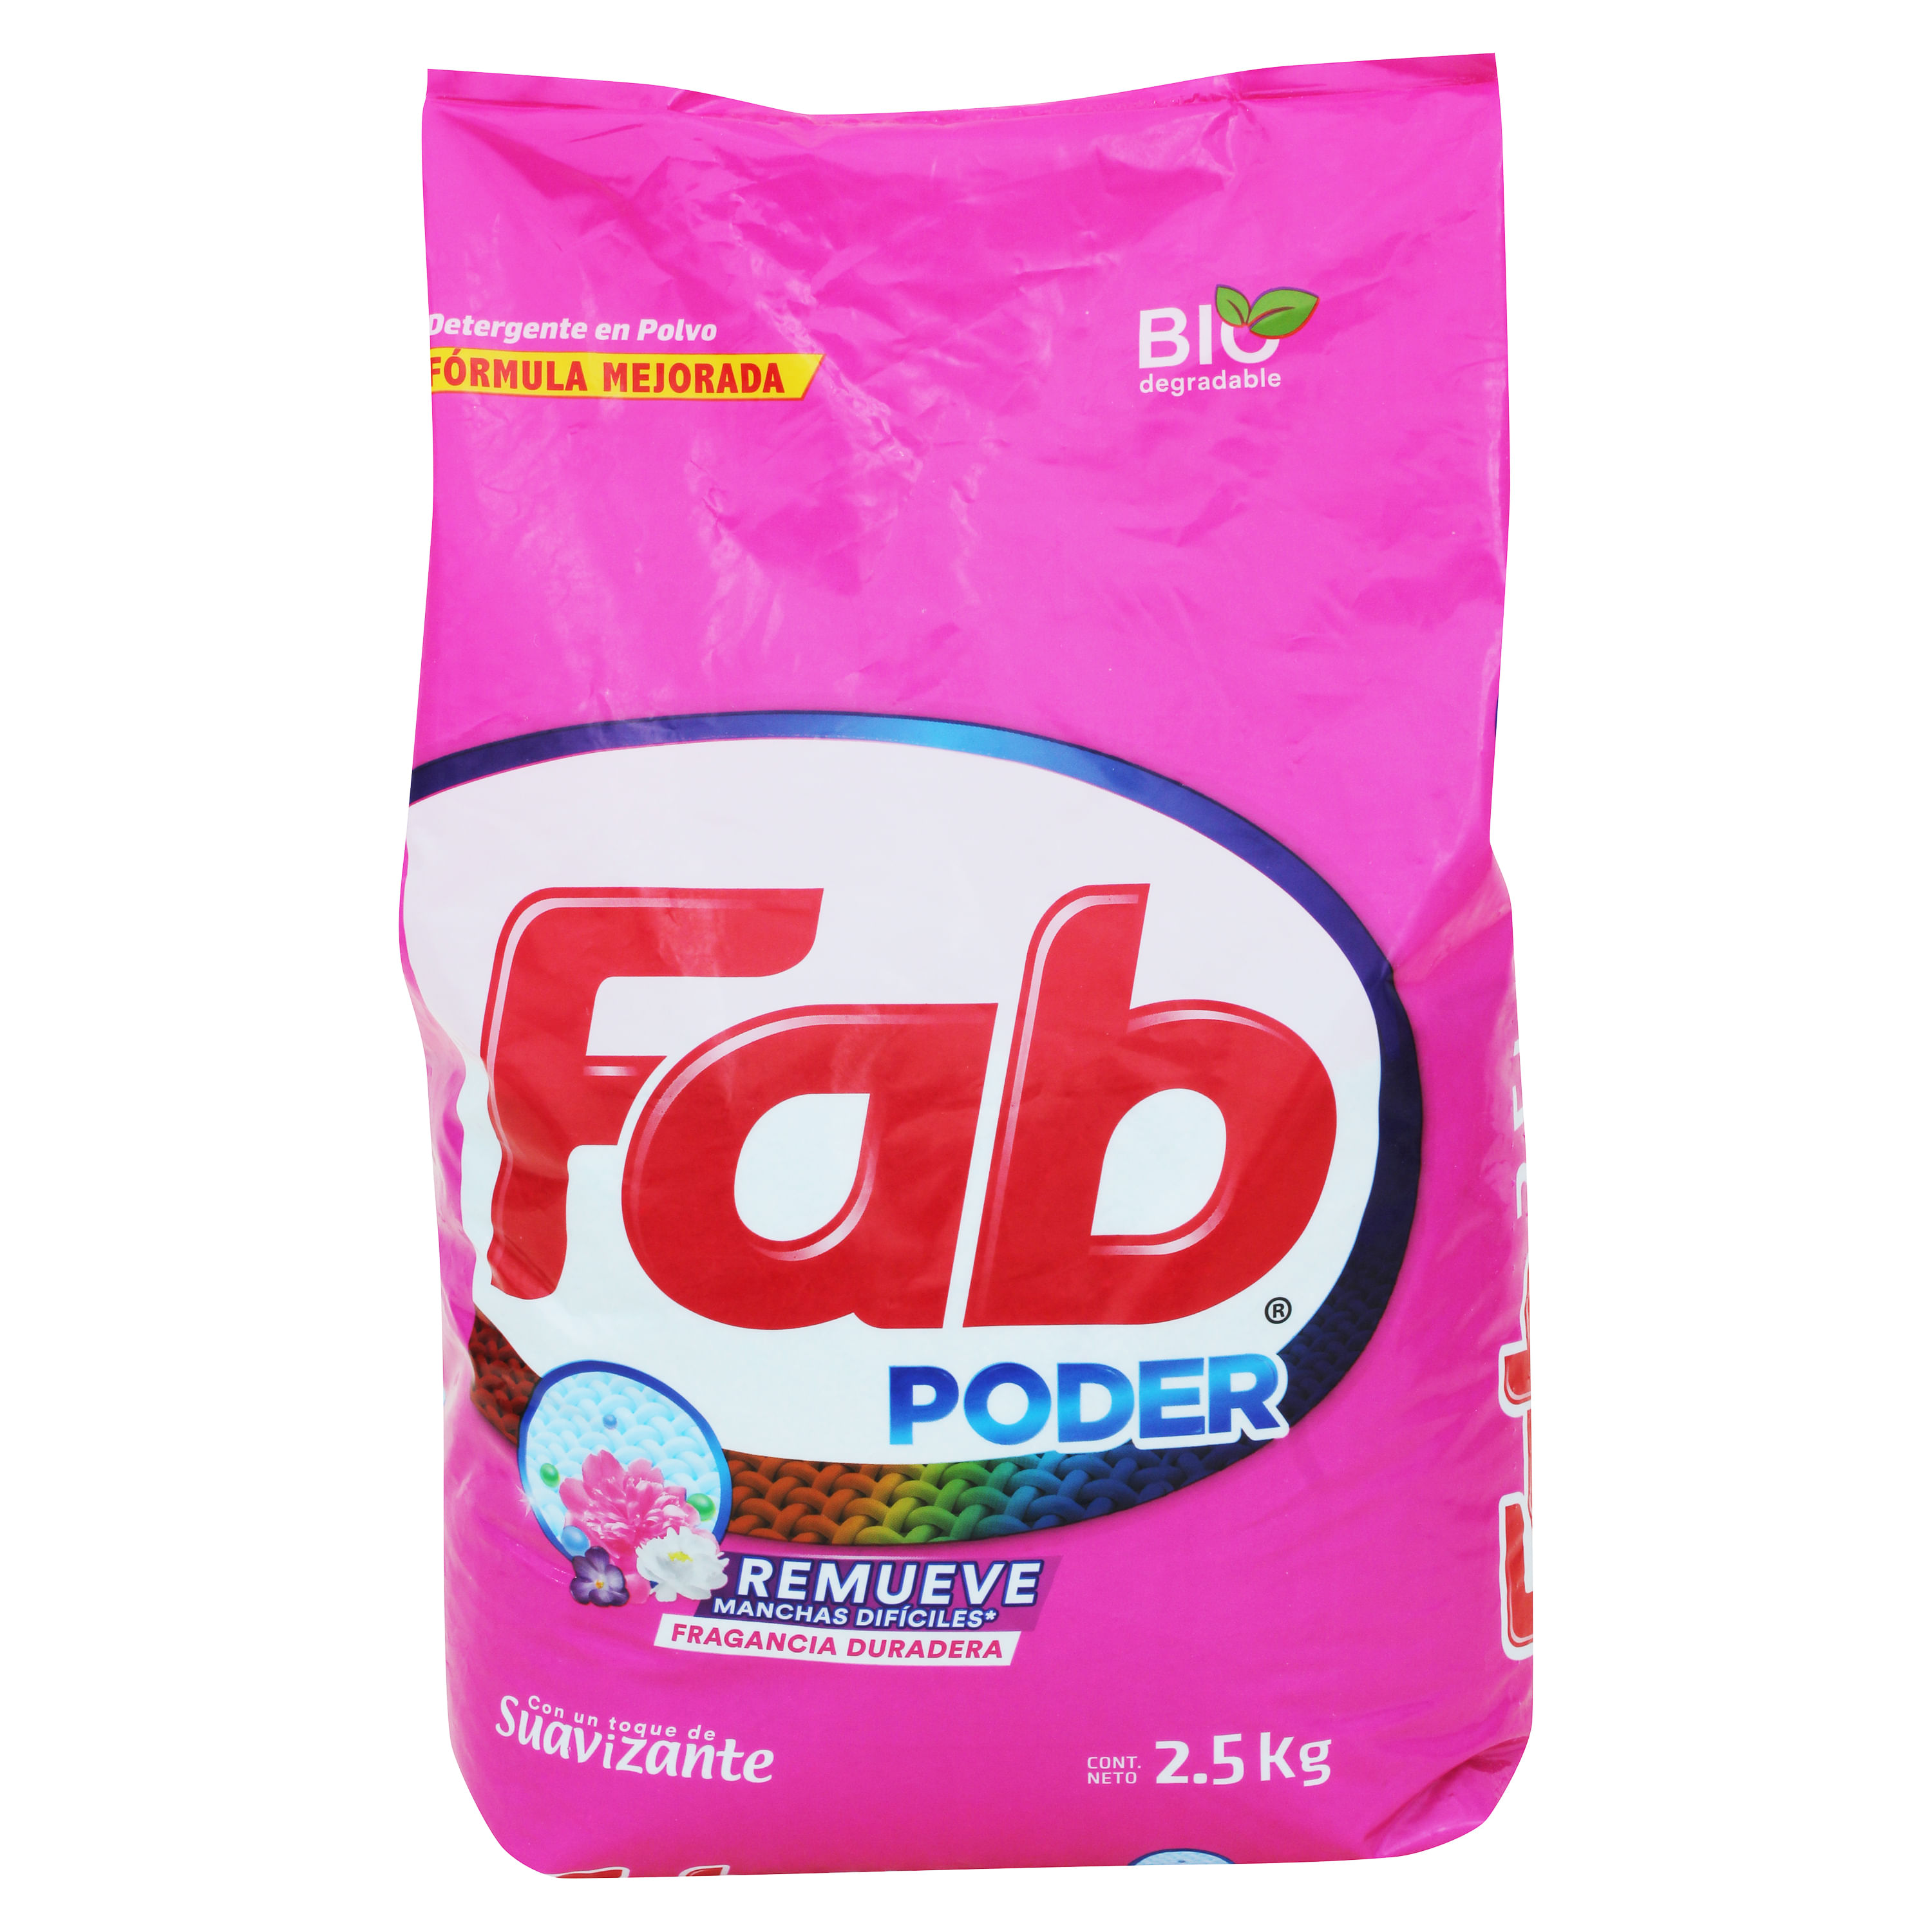 Detergente-Fab3-Flores-Para-Mis-Amores-2-5kg-1-32348